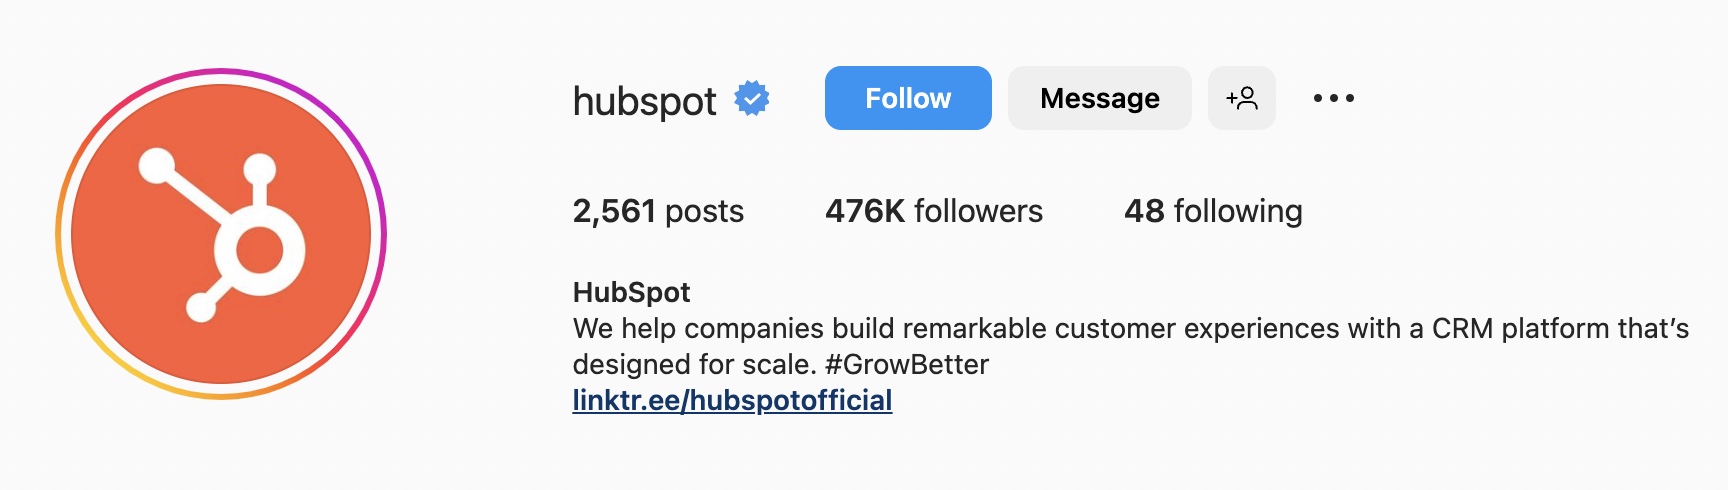 SaaS ビジネス、hubspot の Instagram バイオ アイデア